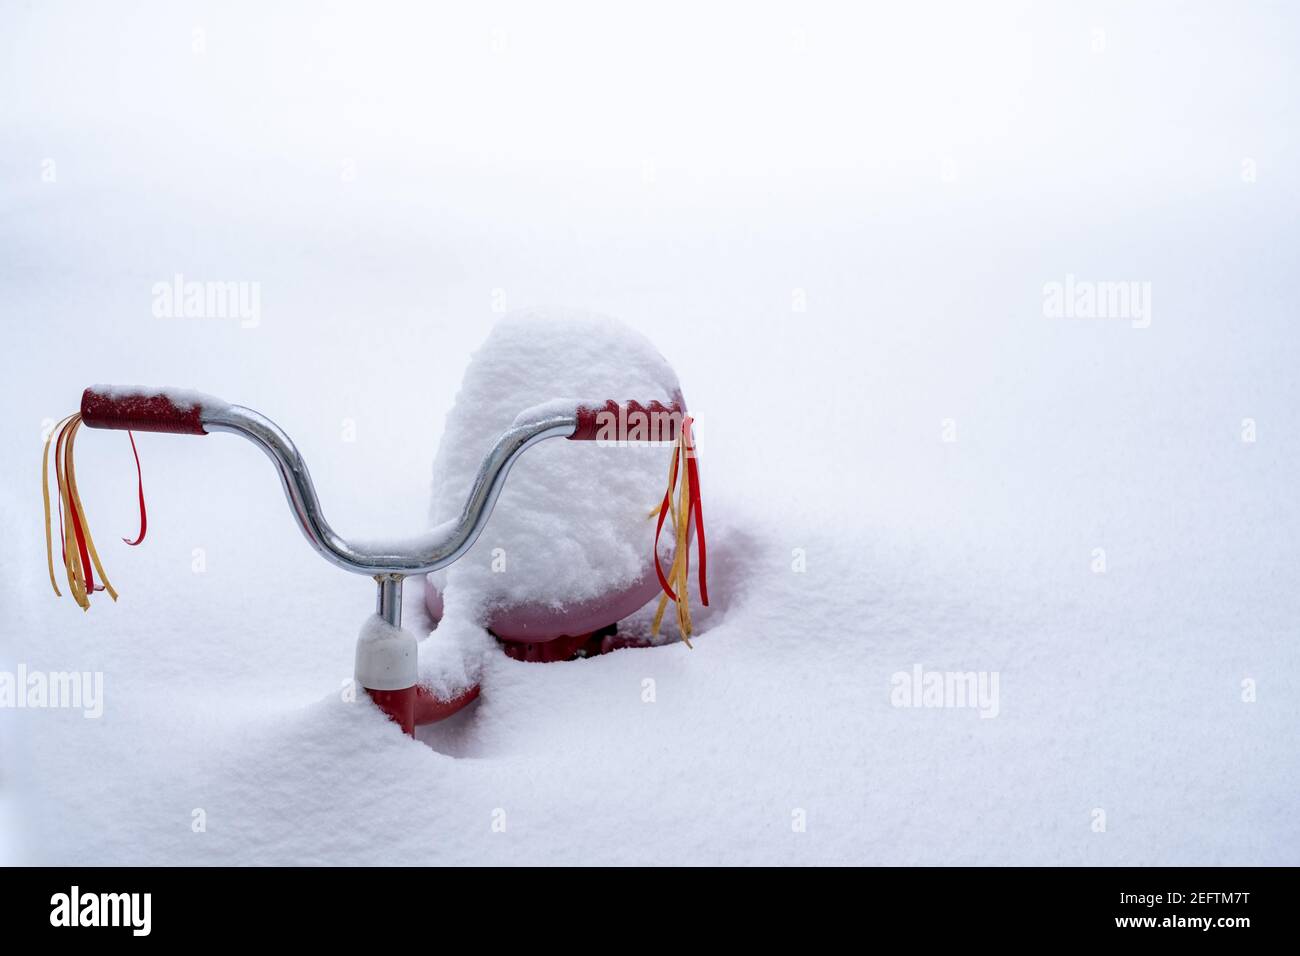 Un triciclo con le ruscelli del manubrio è quasi sepolto nella neve profonda dopo una nevicata pesante. Foto Stock